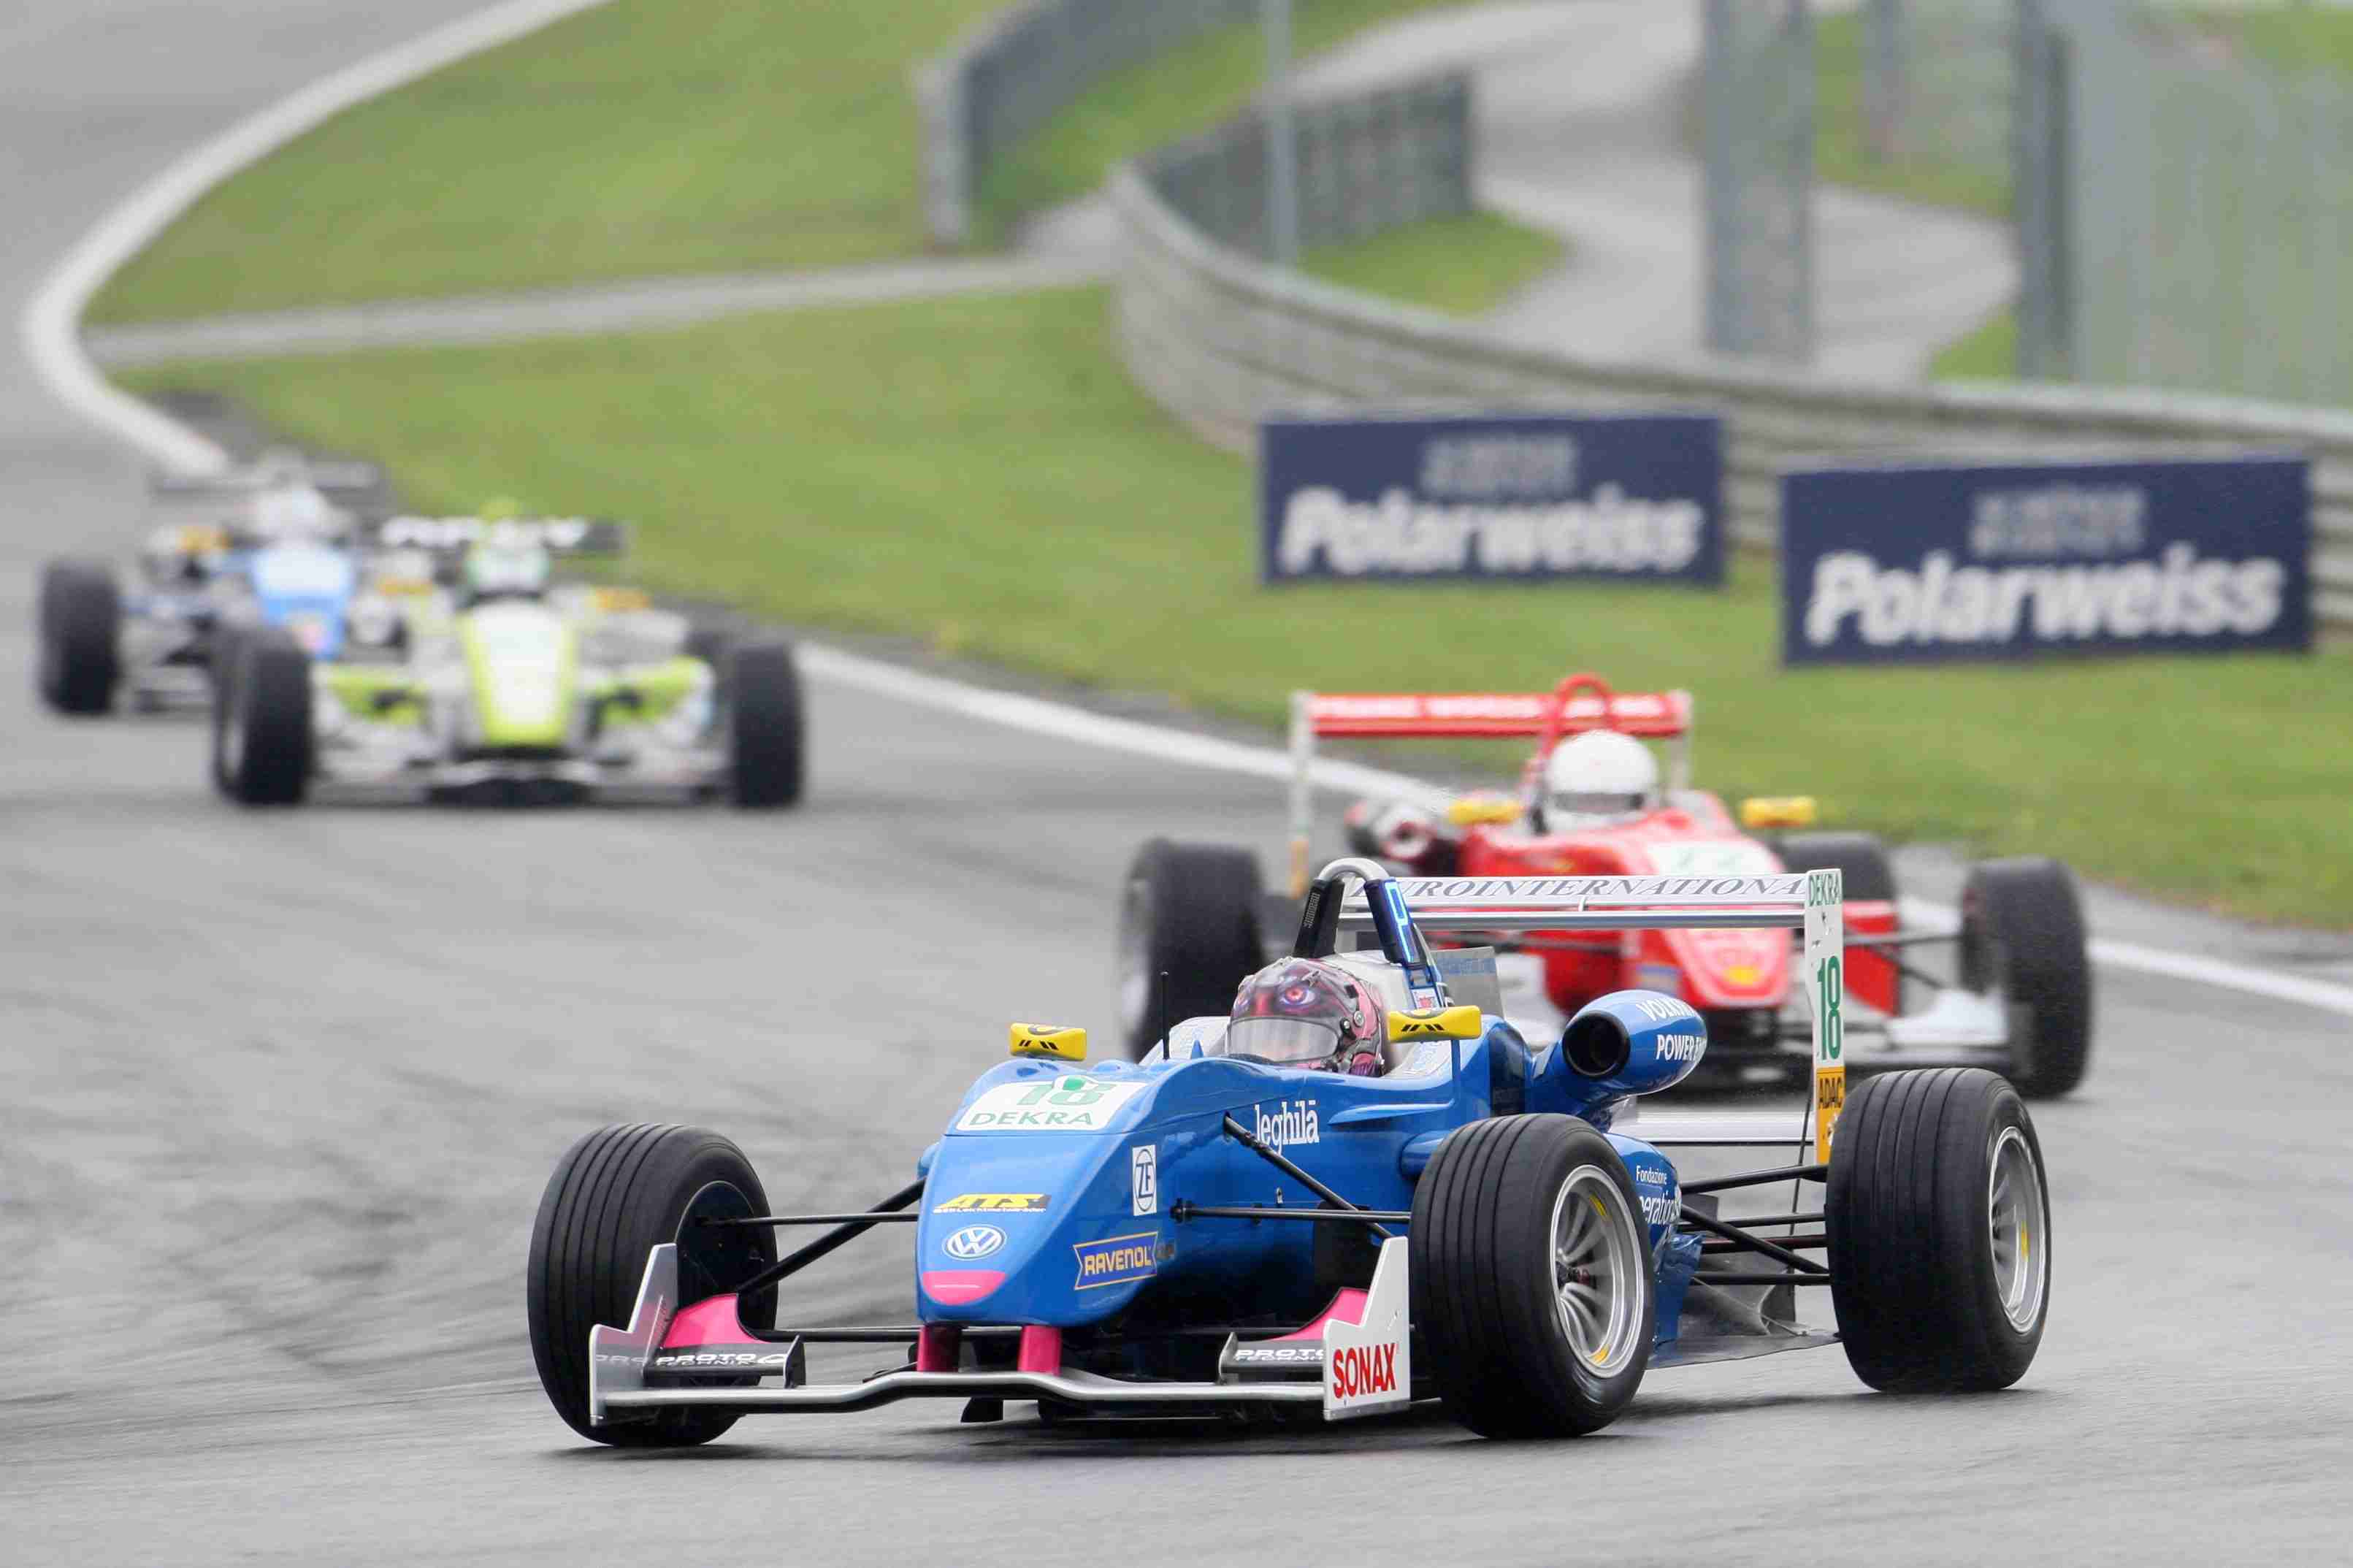 Automobilismo/Campionato tedesco di Formula 3. Michela Cerruti migliora le sue prestazioni